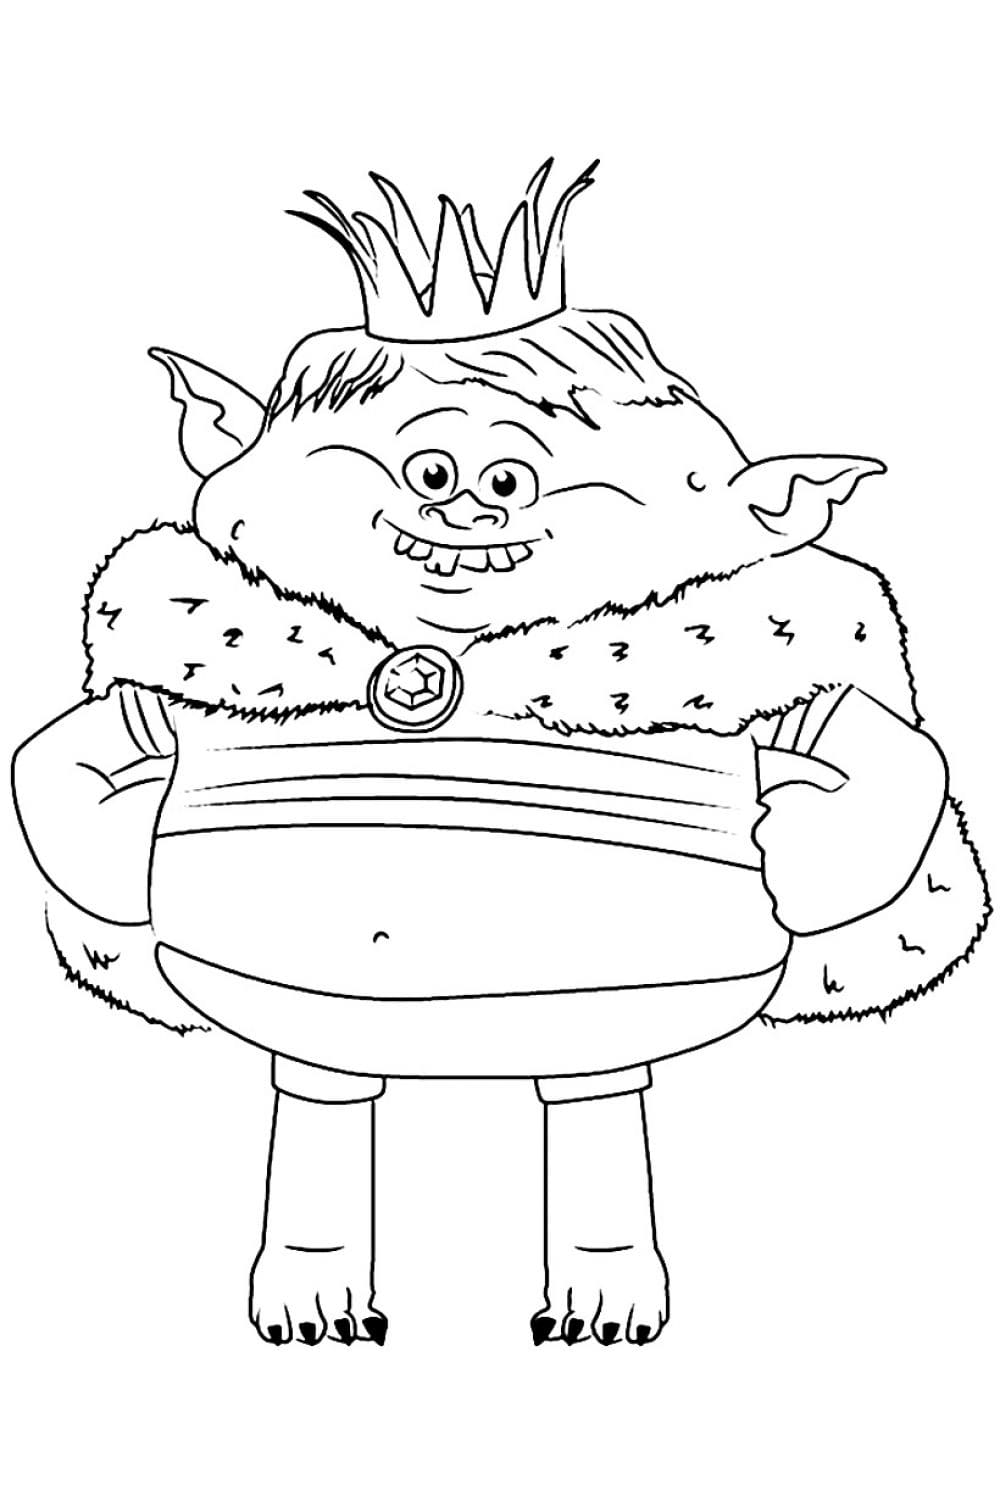 Prince Gristle Jr de Les Trolls coloring page